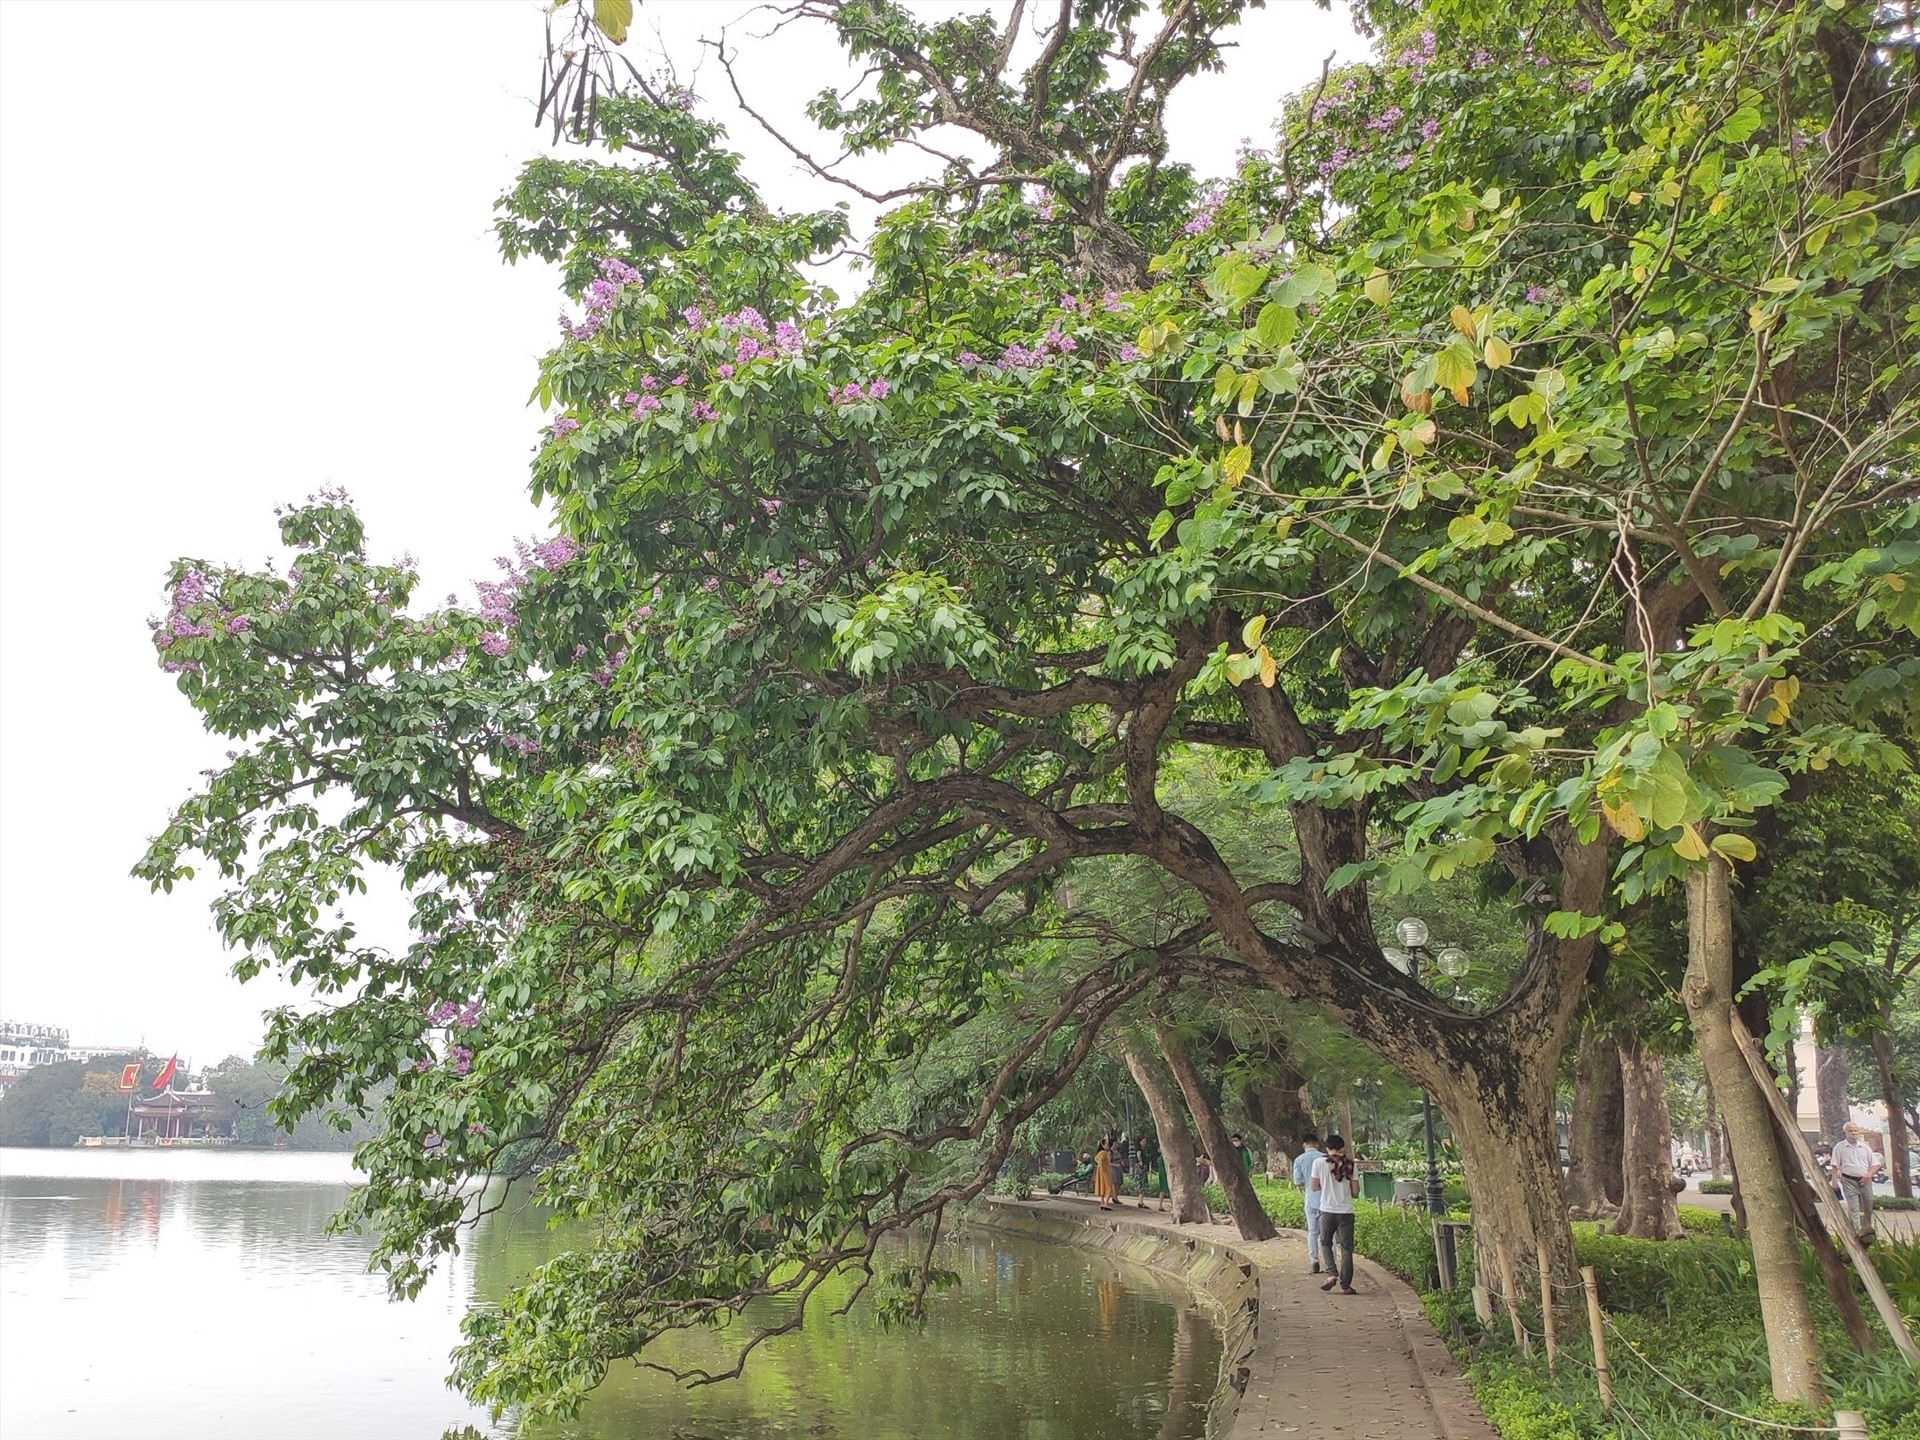 Tại Hồ Hoàn Kiếm, những cây bằng lăng cổ thụ đang bắt đầu nở rộ, làm đẹp cho khuôn viên phố đi bộ và làm dịu đi cái nắng nóng của mùa hè. Ảnh: Hoàng Cường